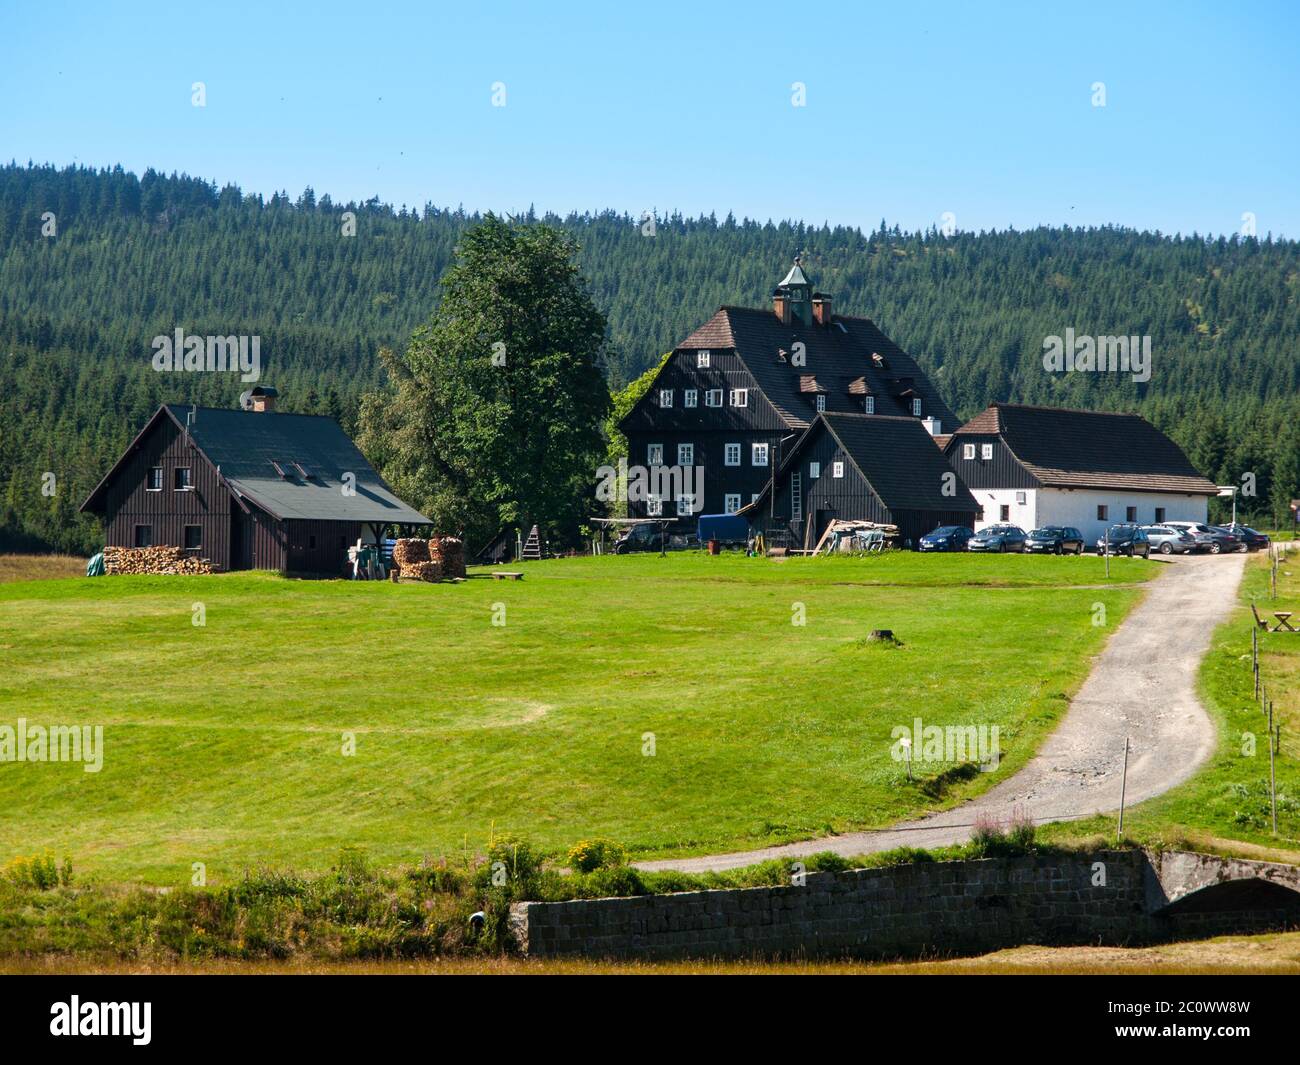 Jizerka - kleines idyllisches Bergglasmakerdorf im Isergebirge, Nordböhmen, Tschechische Republik, Europa. Sonnige Sommertag mit blauem Himmel aufgenommen Stockfoto